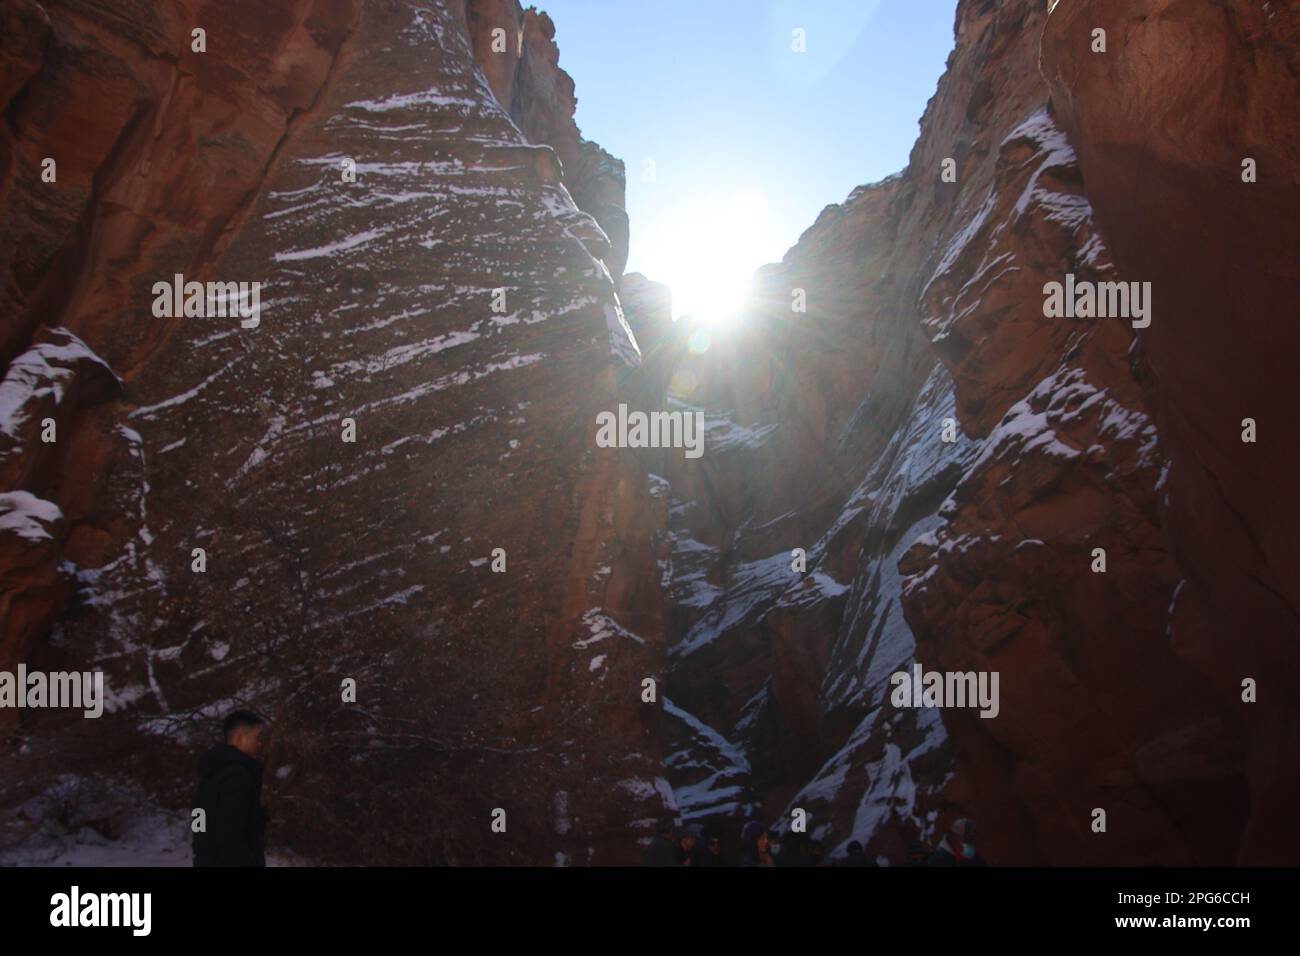 Antelope Canyon ist ein Slot Canyon in Arizona, USA, bekannt für seine engen Passagen, dramatischen Lichtbalken und glatten Sandsteinwände. Stockfoto